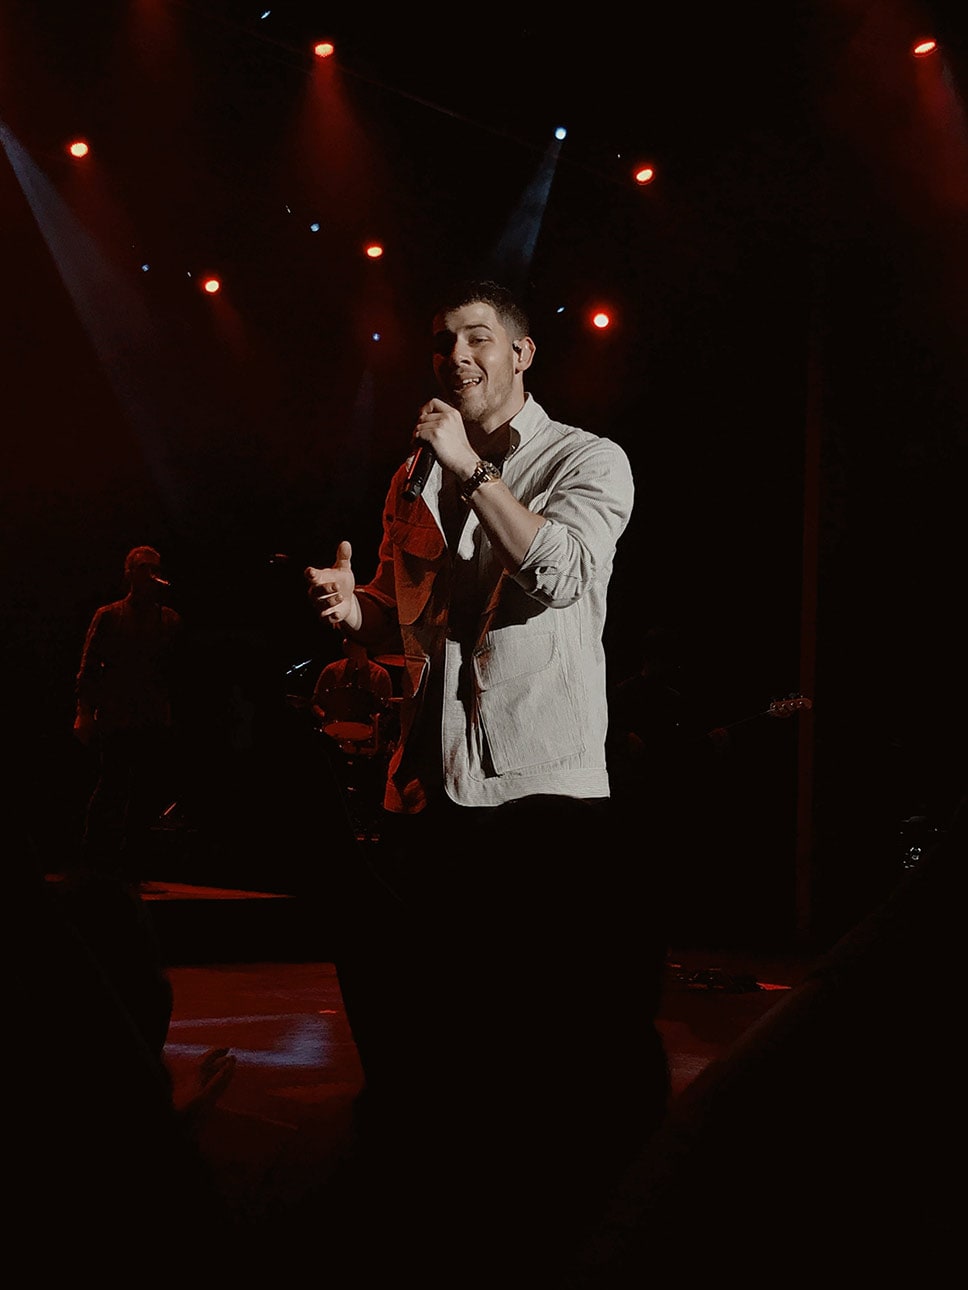 Nick Jonas singing on stage